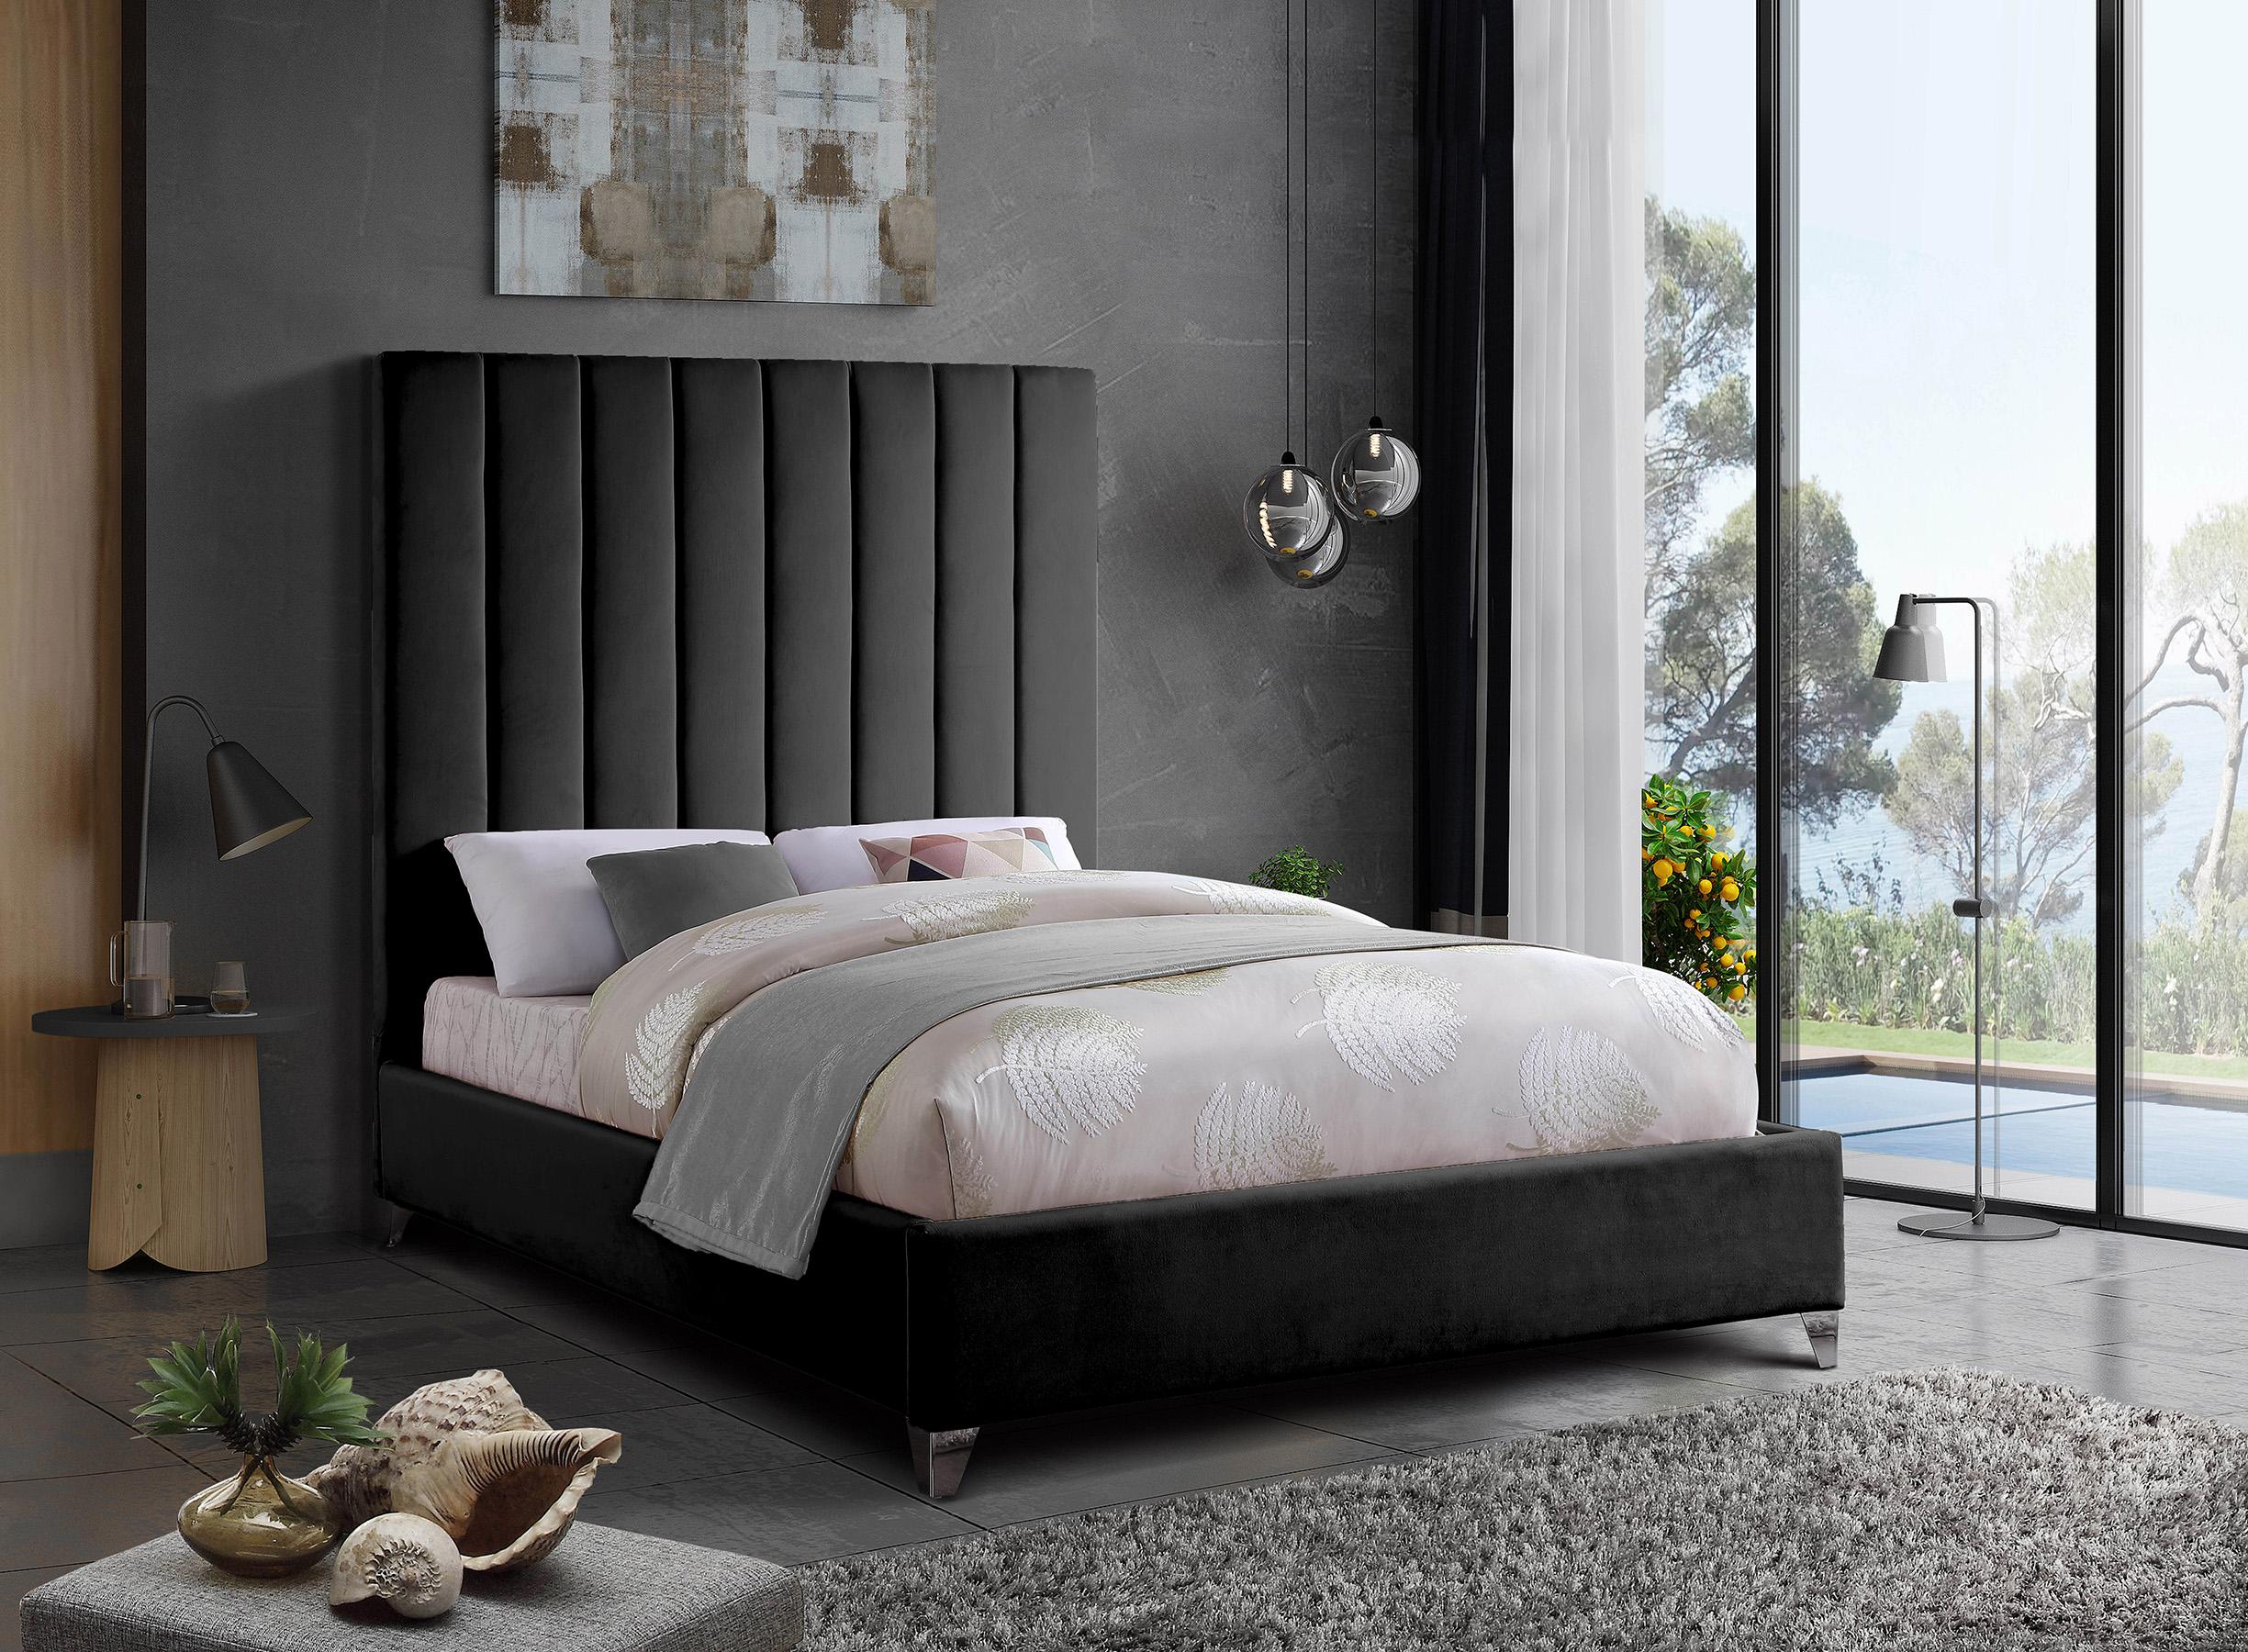 

    
ViaBlack-Q Meridian Furniture Platform Bed
